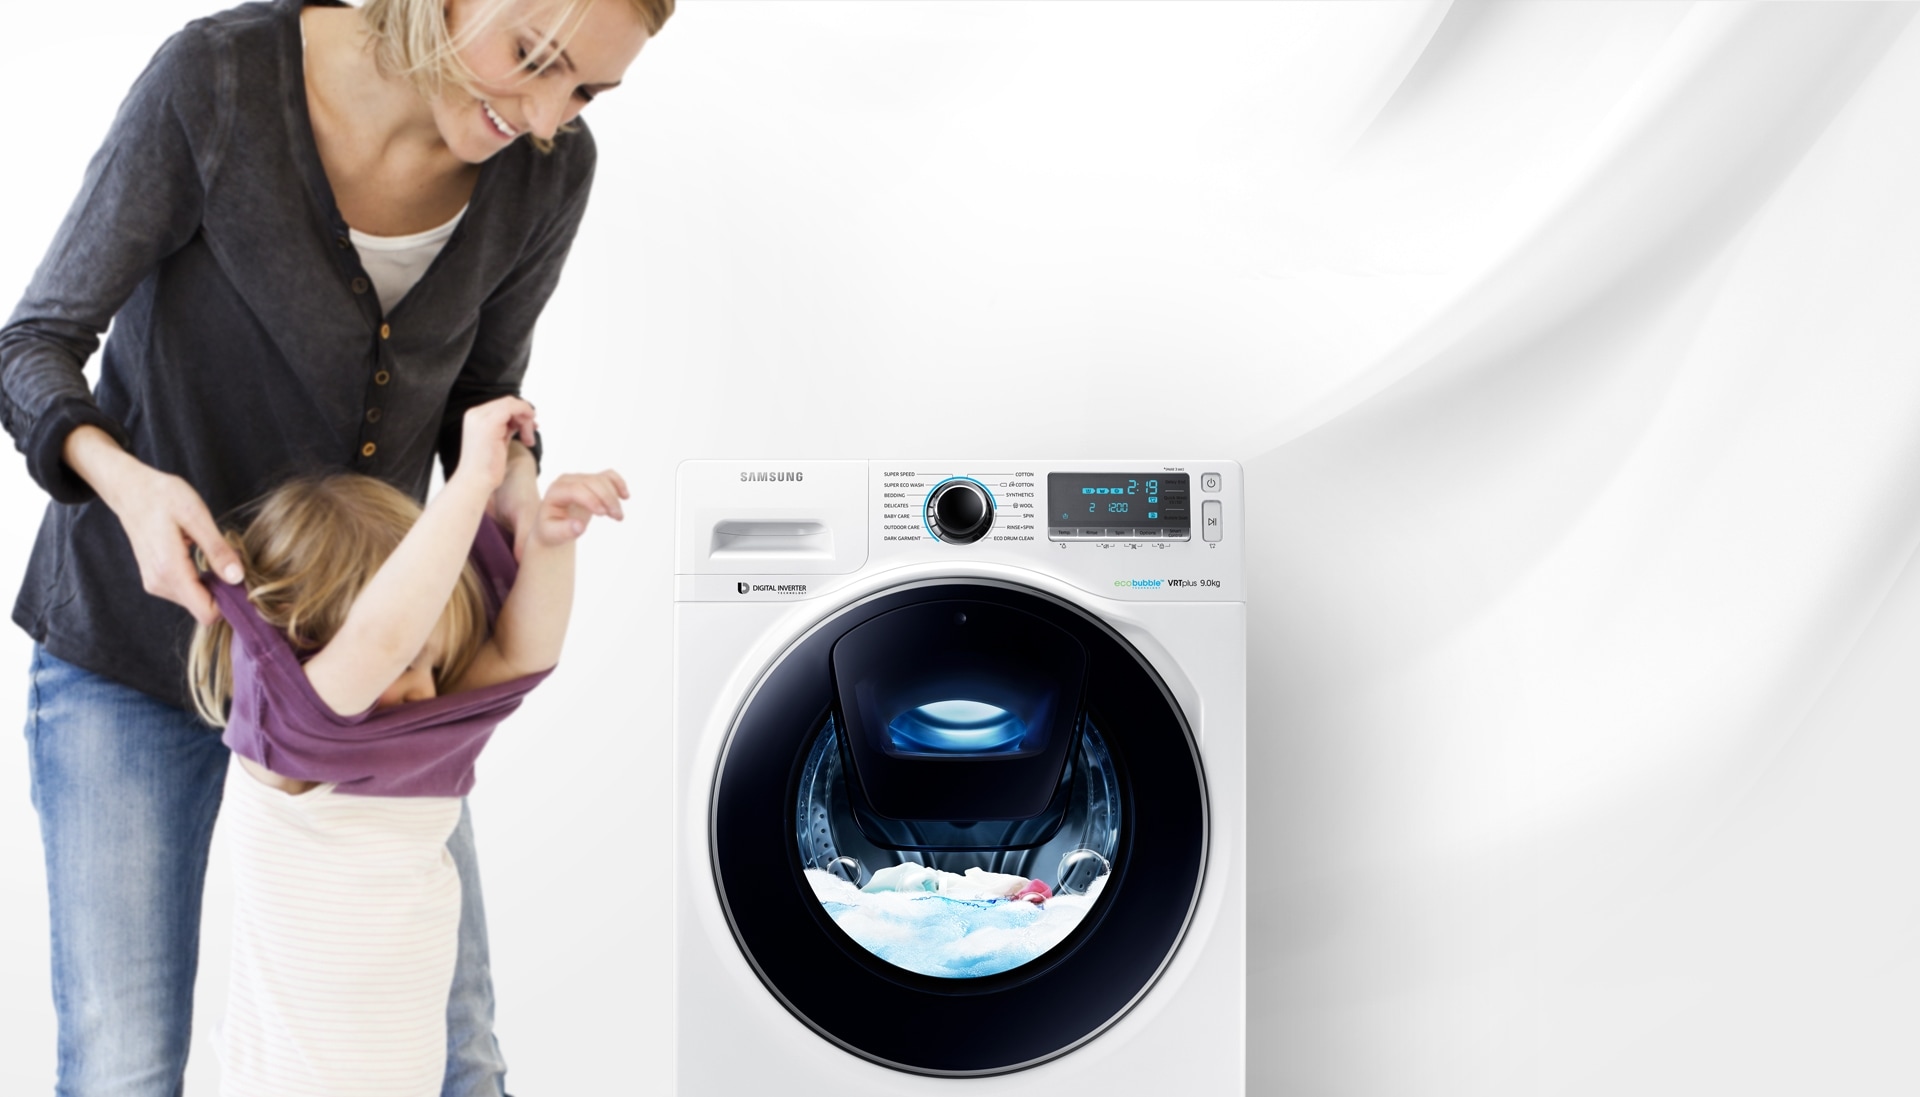 Zdjęcie kobiety zdejmującej ubrania swojego dziecka obok pralki Samsung WW7500, która jest w trakcie cyklu prania.